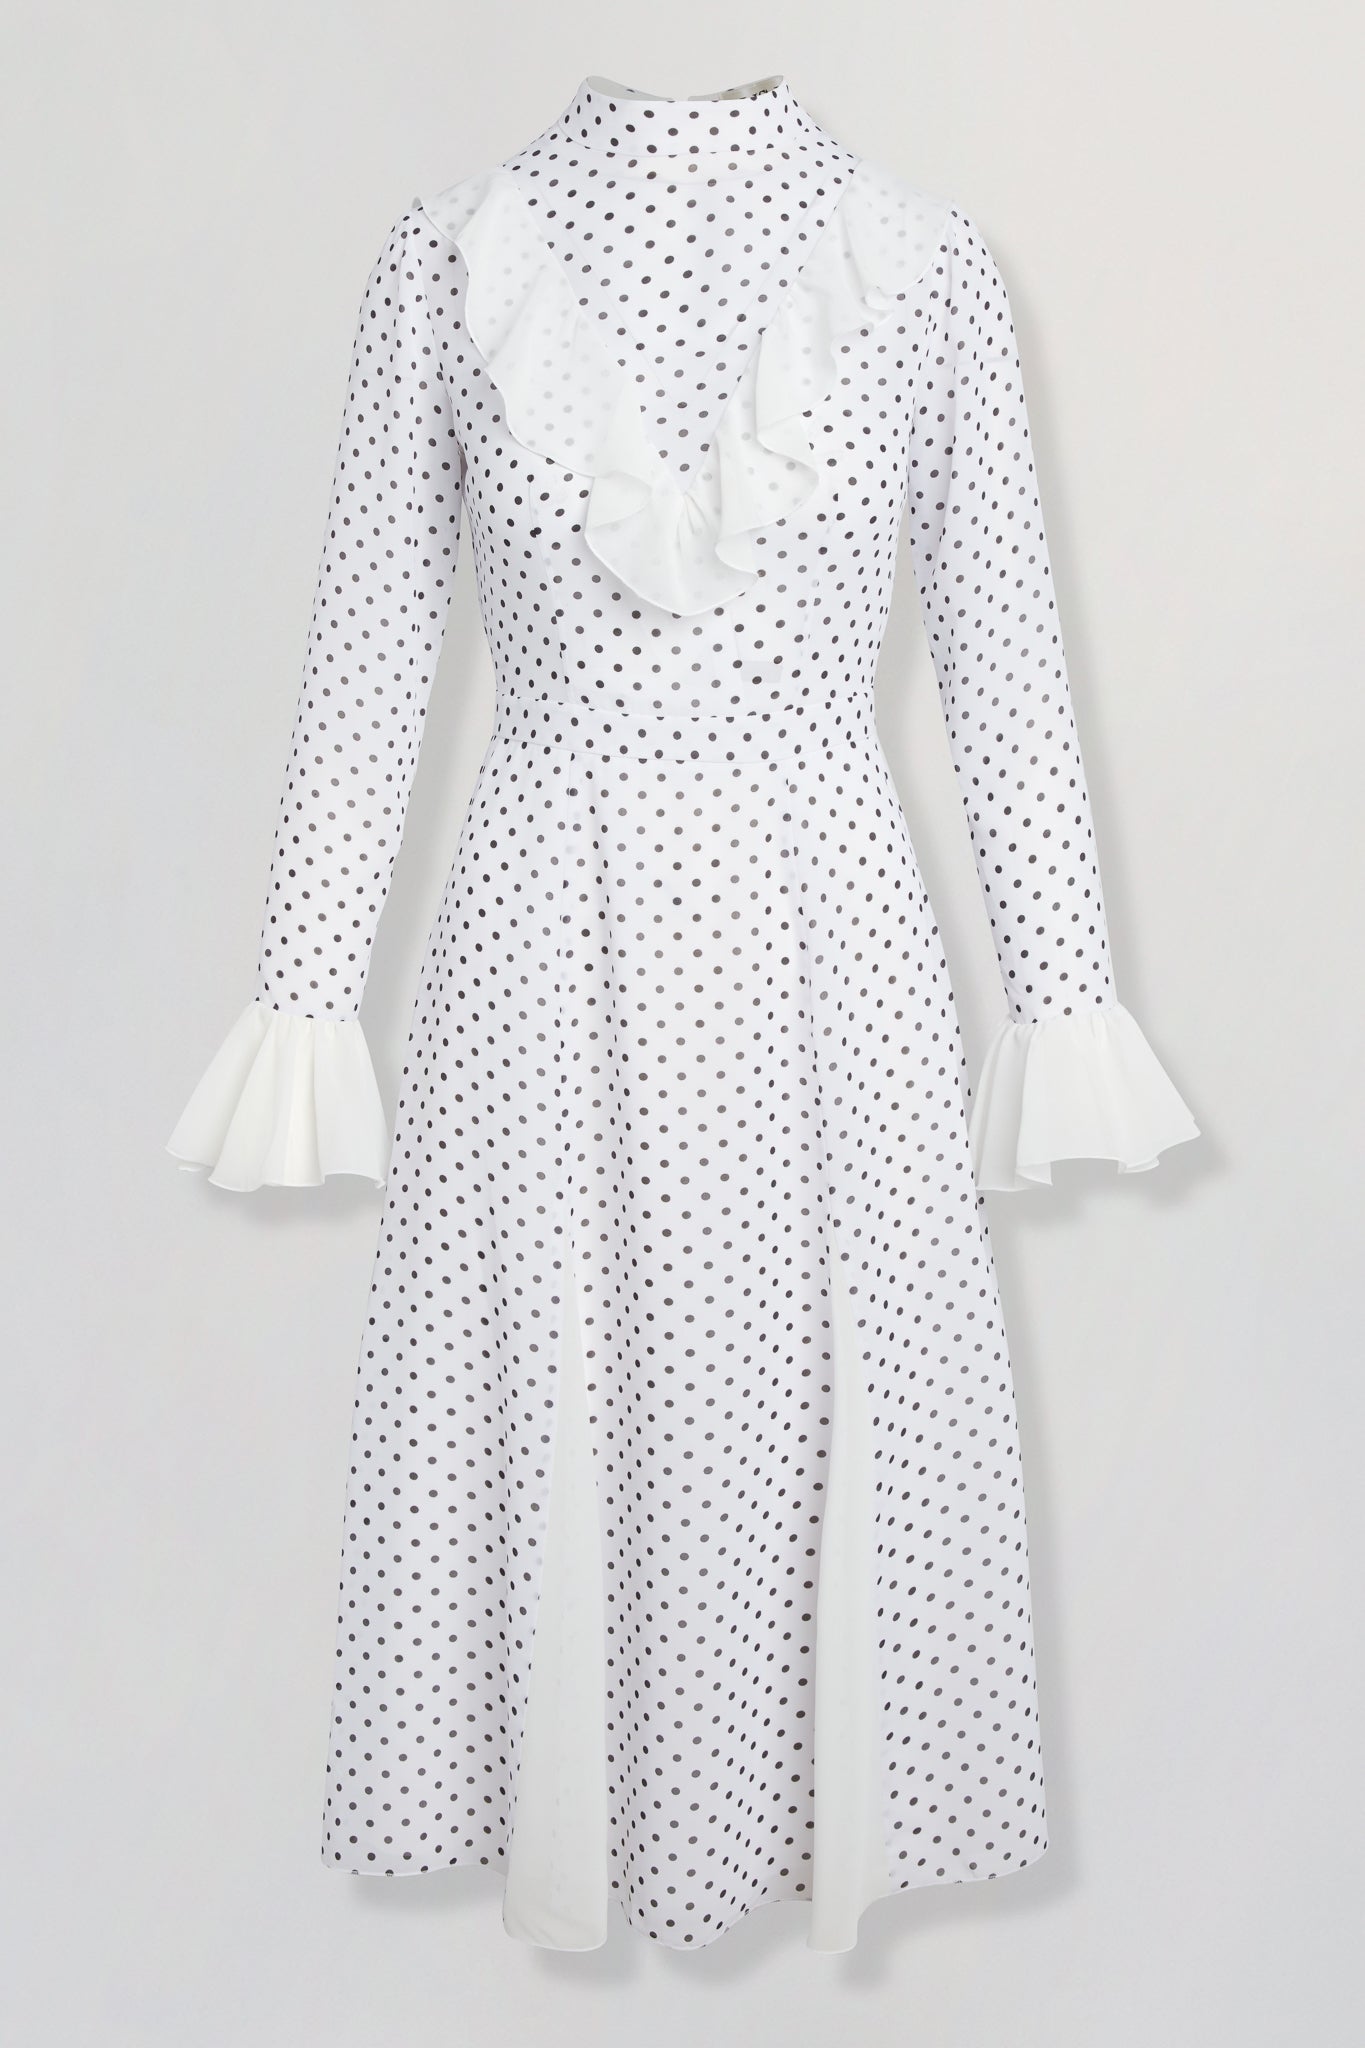 Chiffon polka-dot dress with ruffles in white